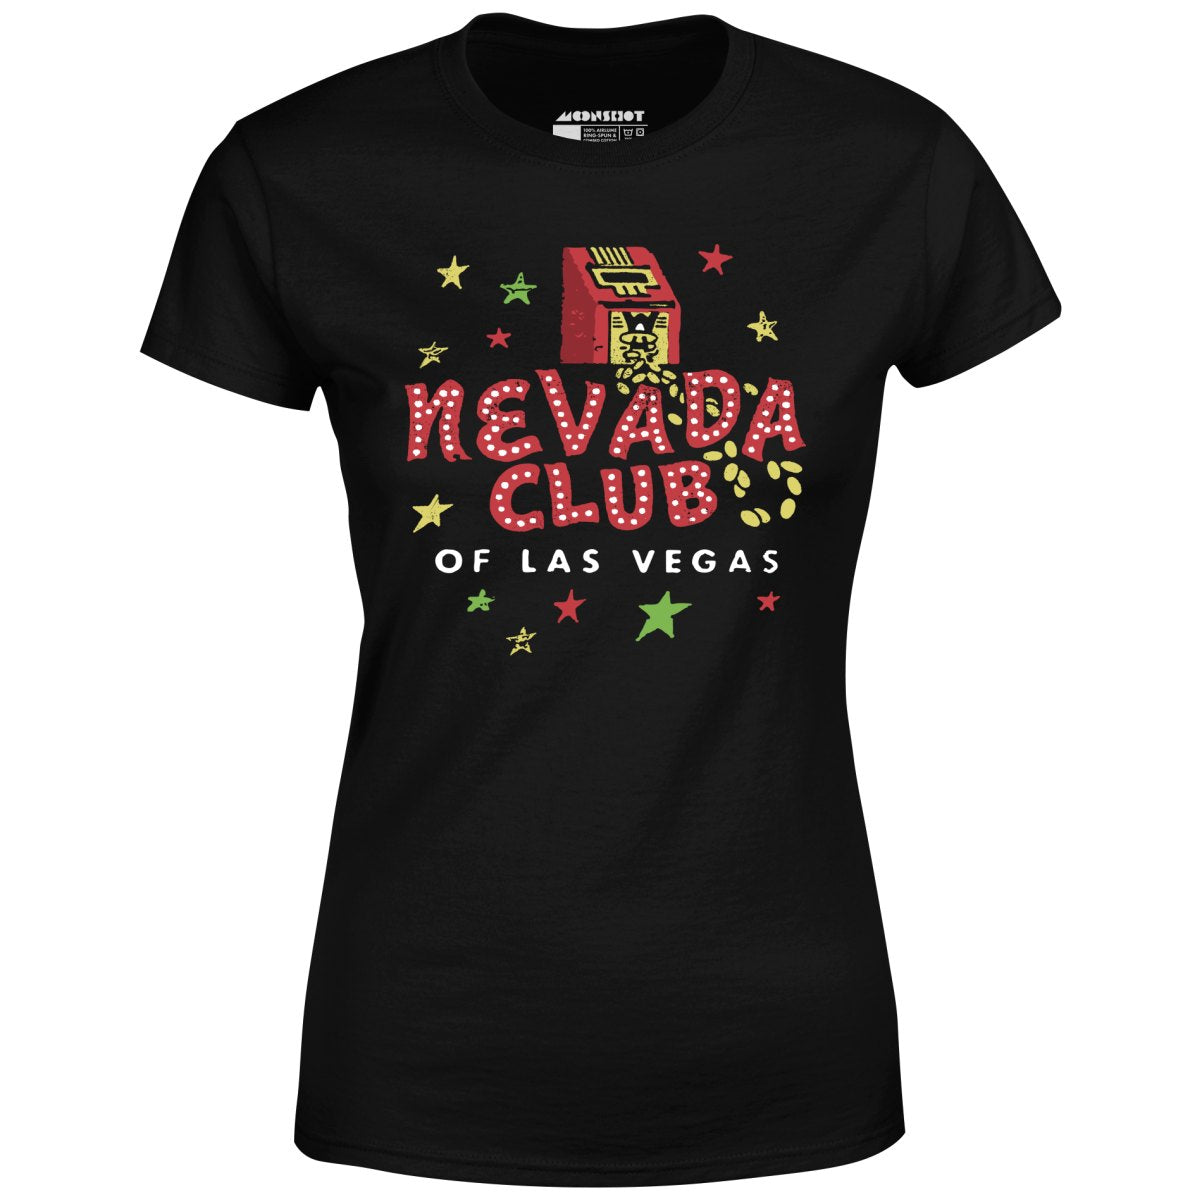 Nevada Club - Vintage Las Vegas - Women's T-Shirt